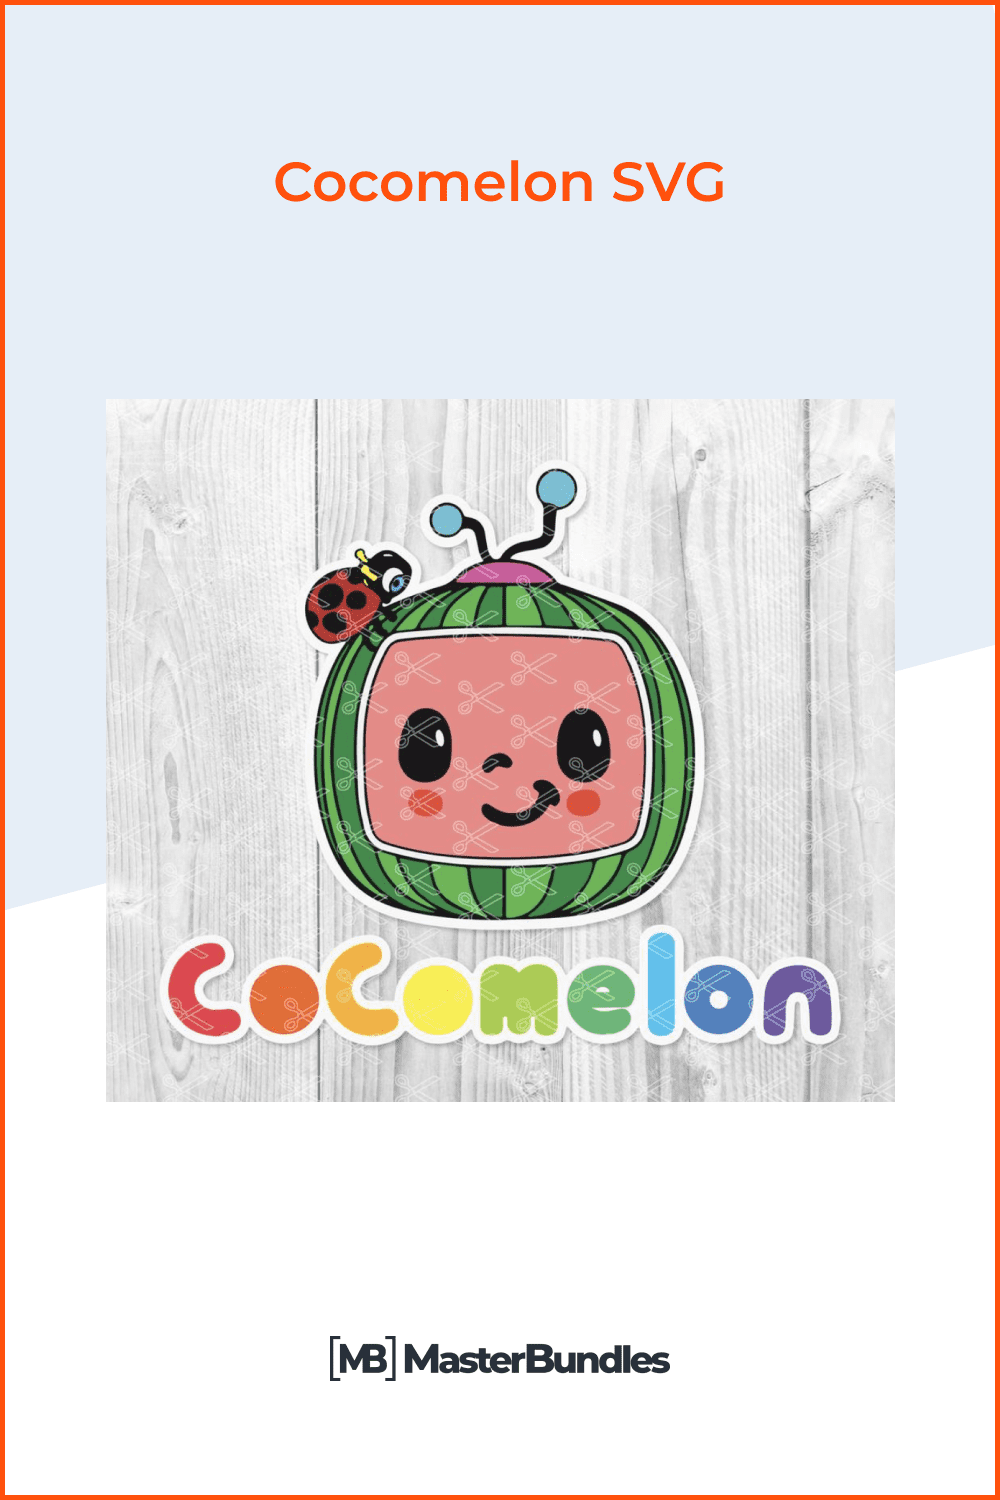 Cocomelon SVG.